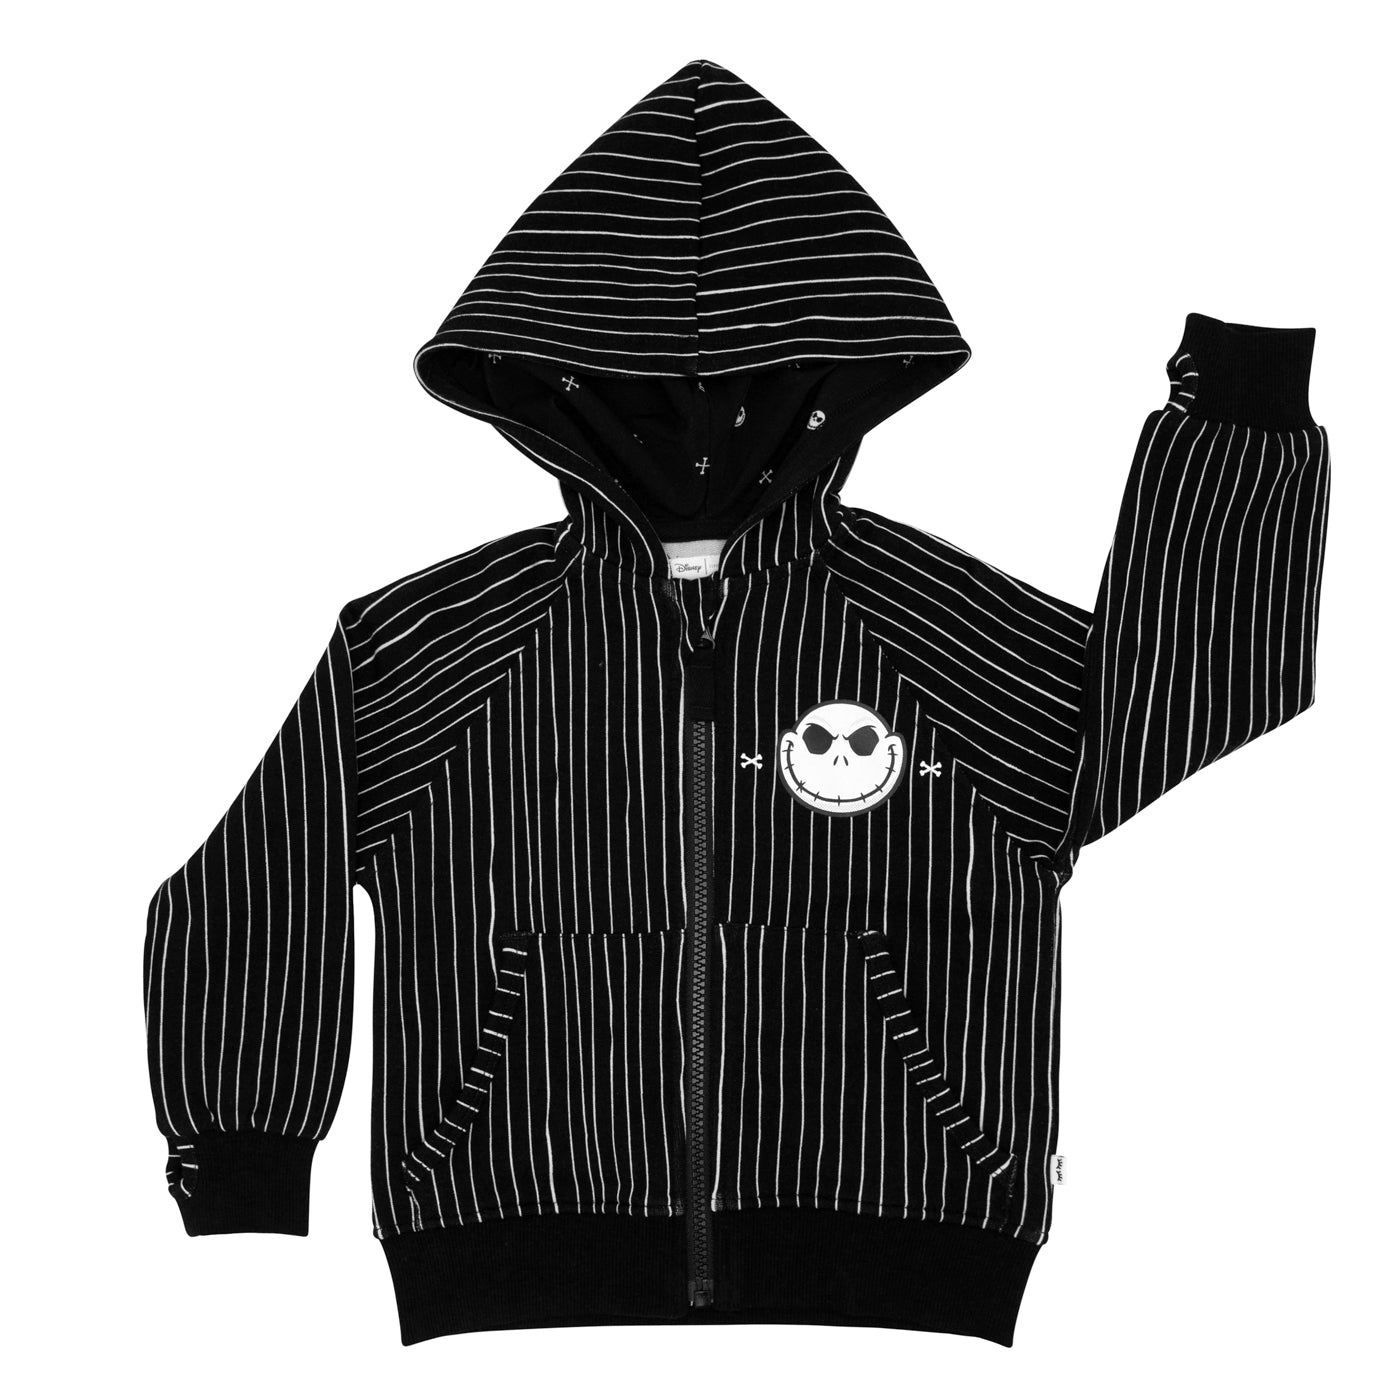 Flat lay image of a Jack Skellington zip hoodie